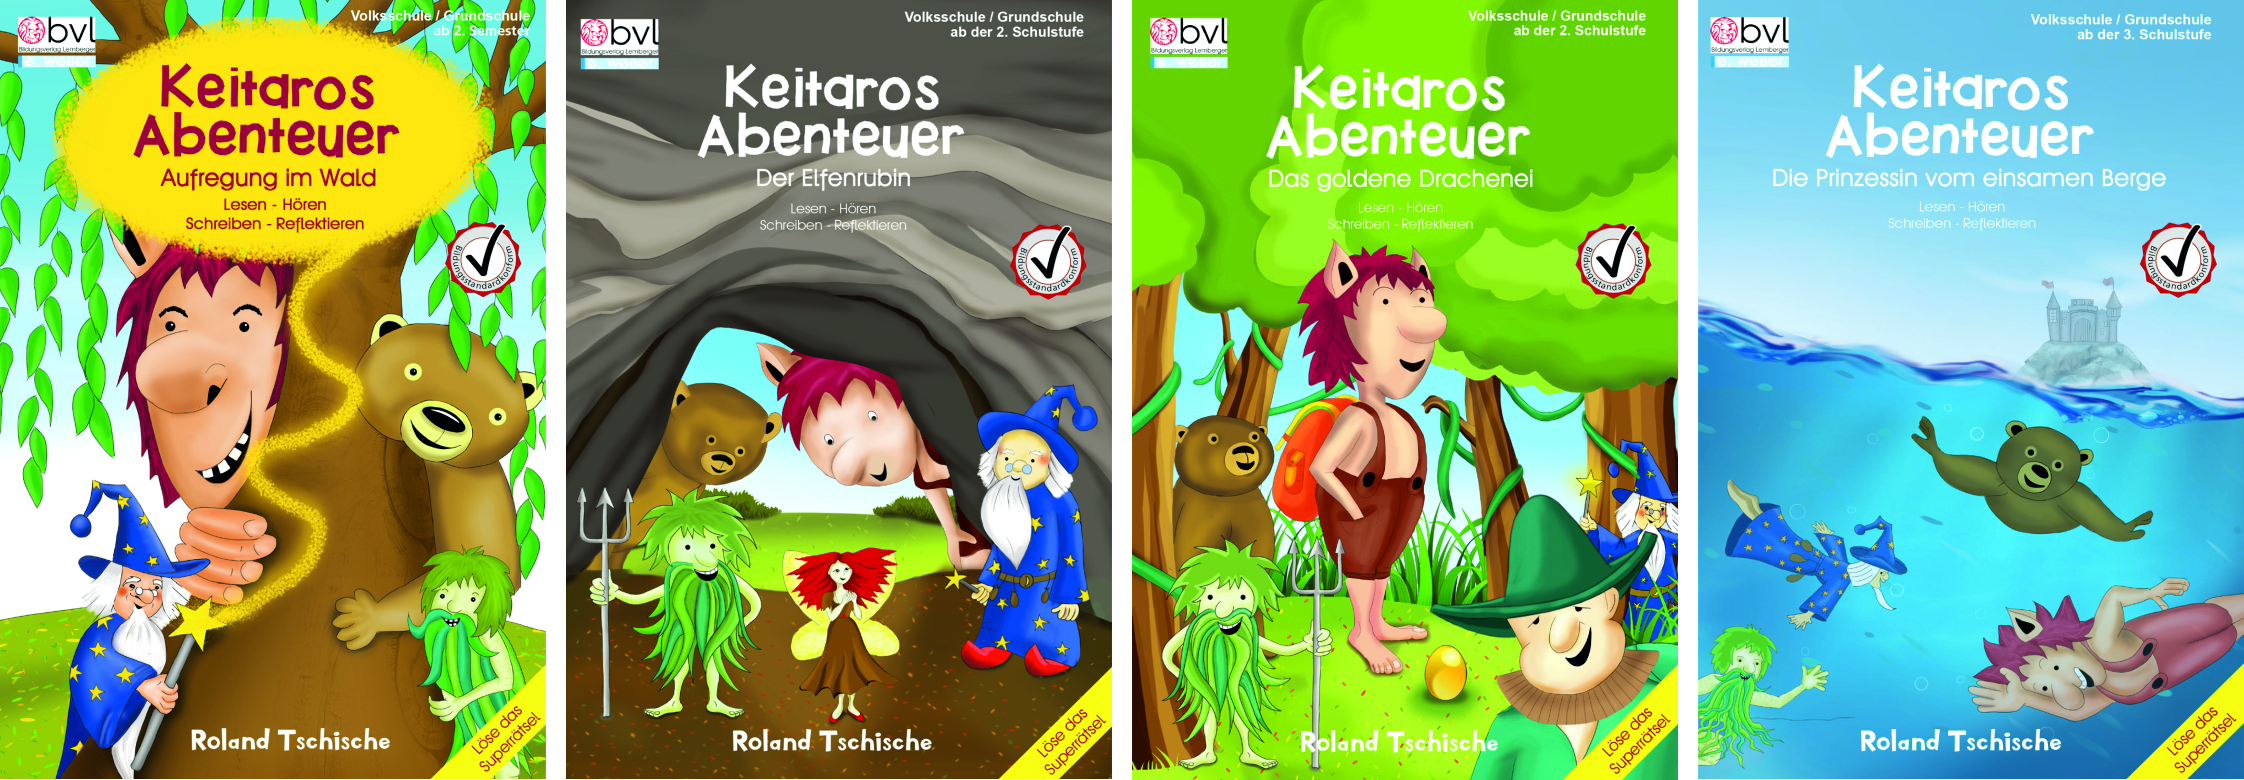 Die vier Bände der Reihe Keitaros Abenteuer